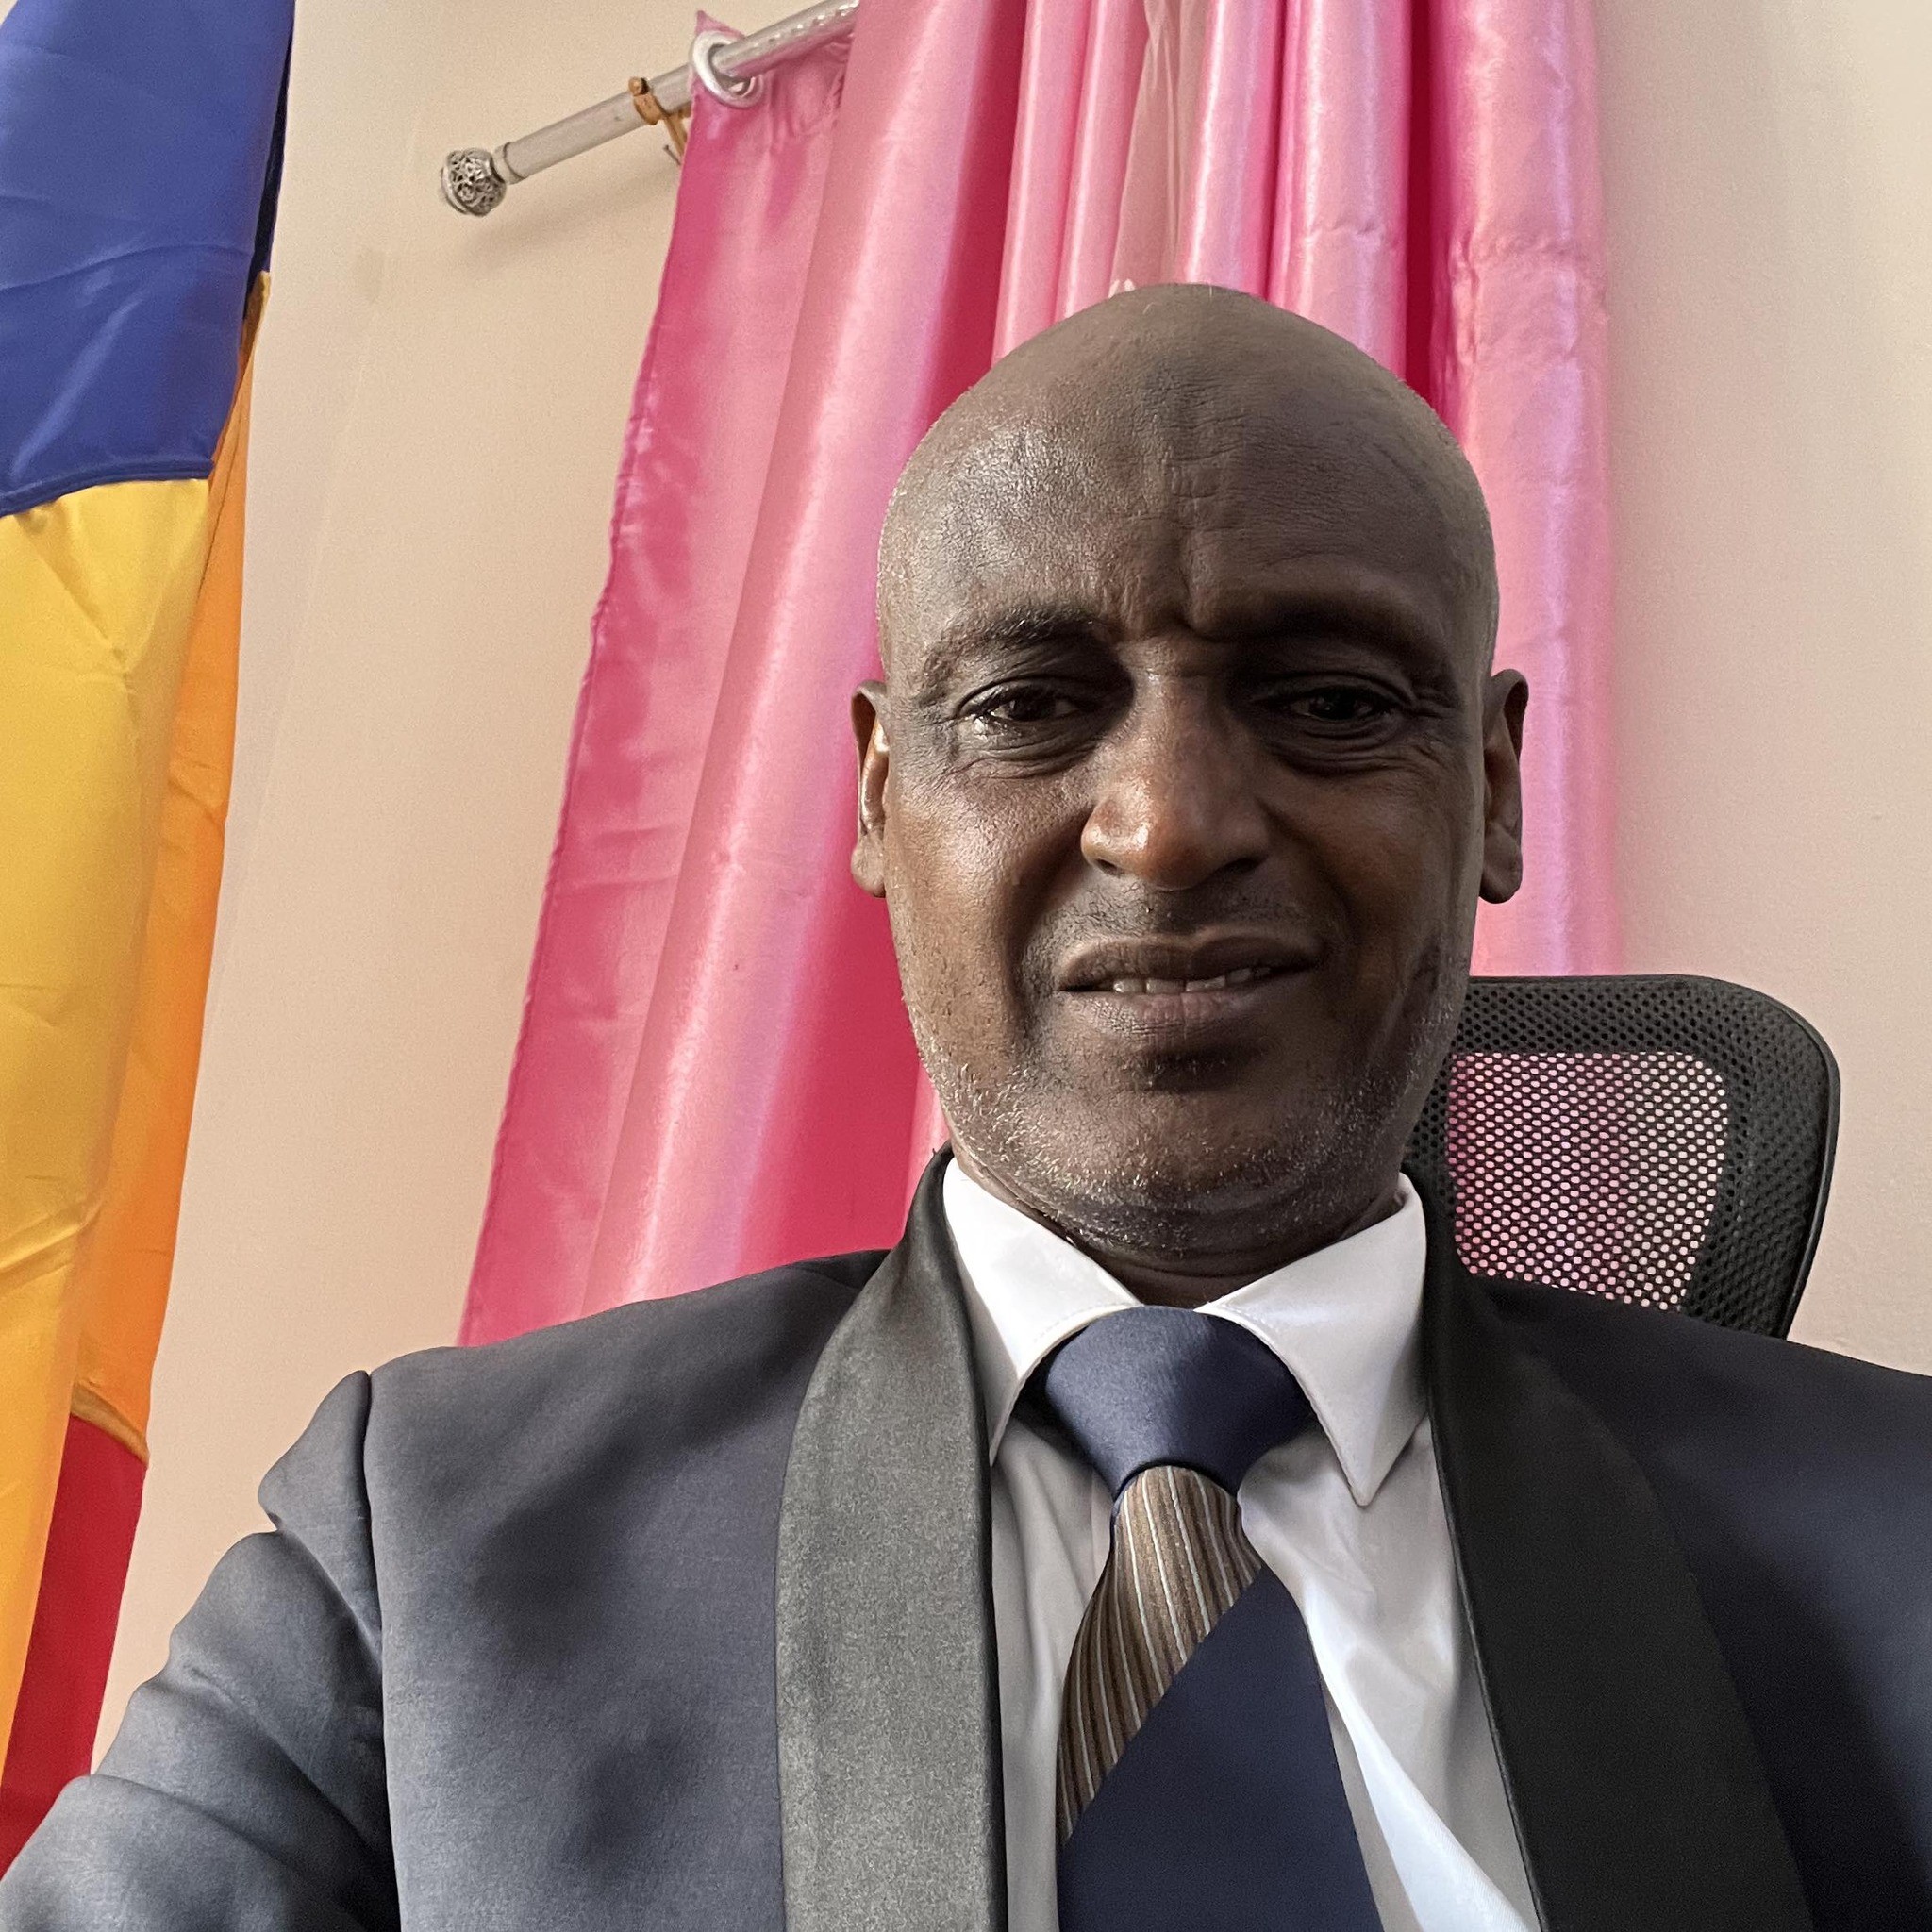 Tchad : Le Procureur confirme le décès de l’opposant Yaya Dillo